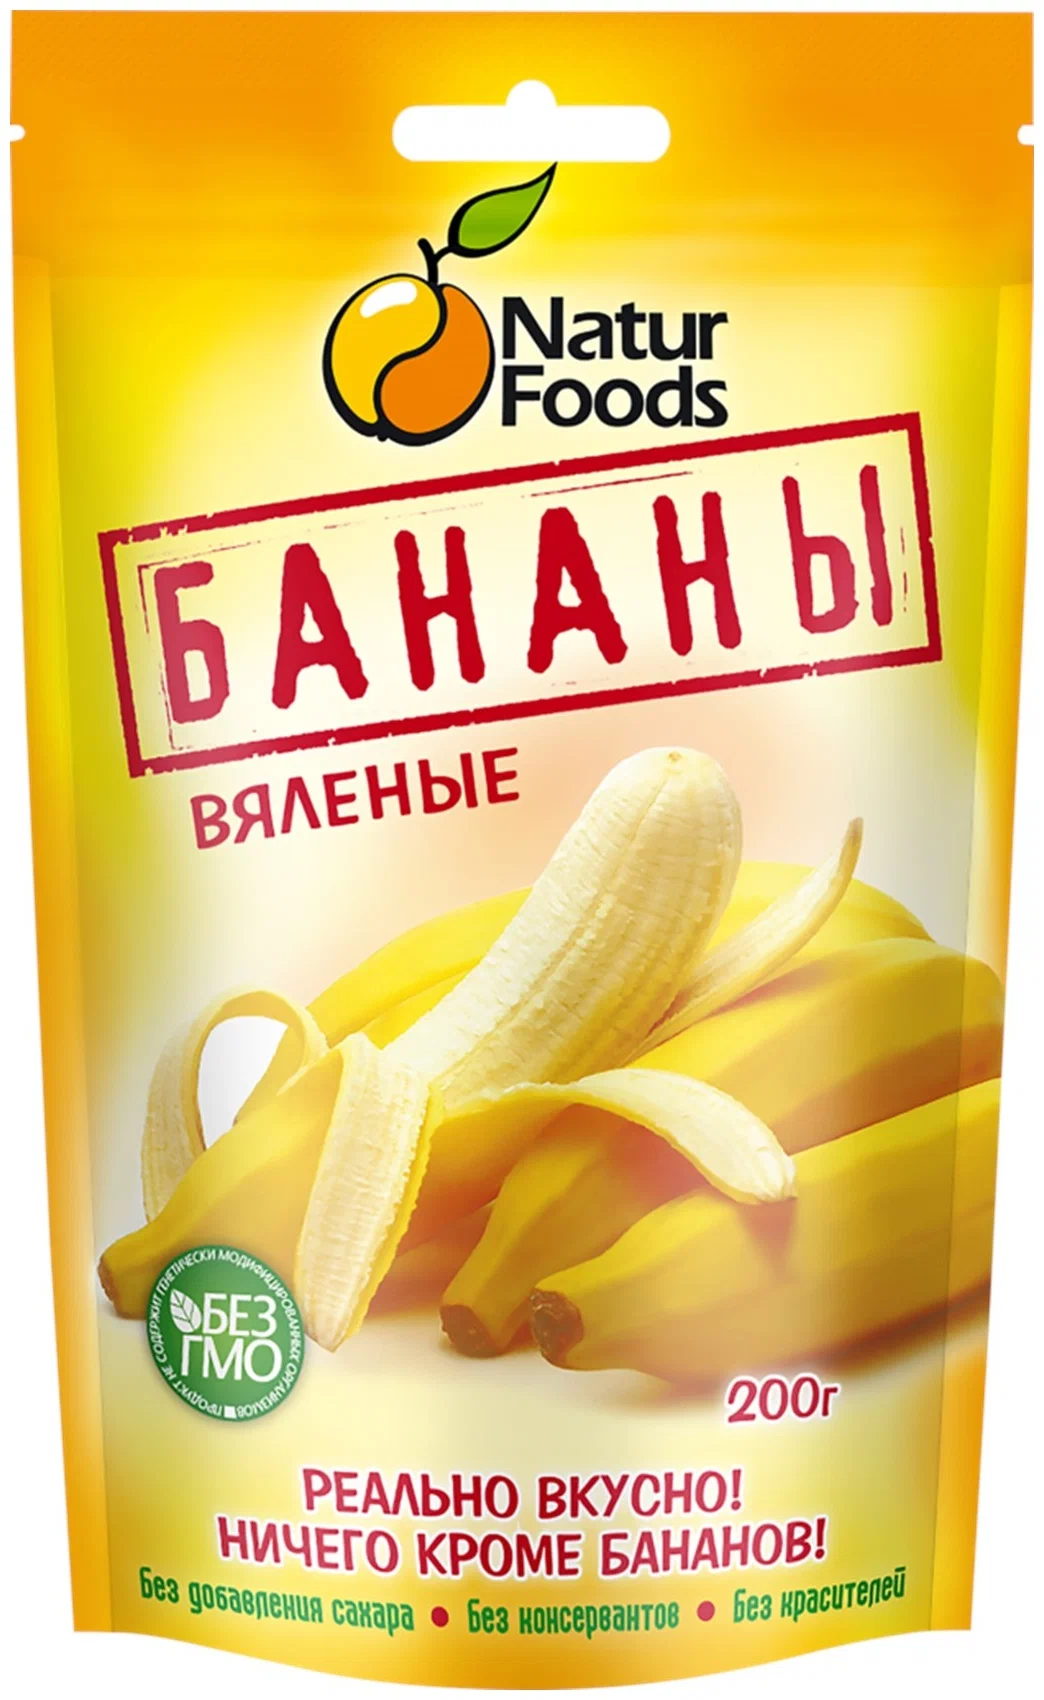 Бананы вяленые 200 гр